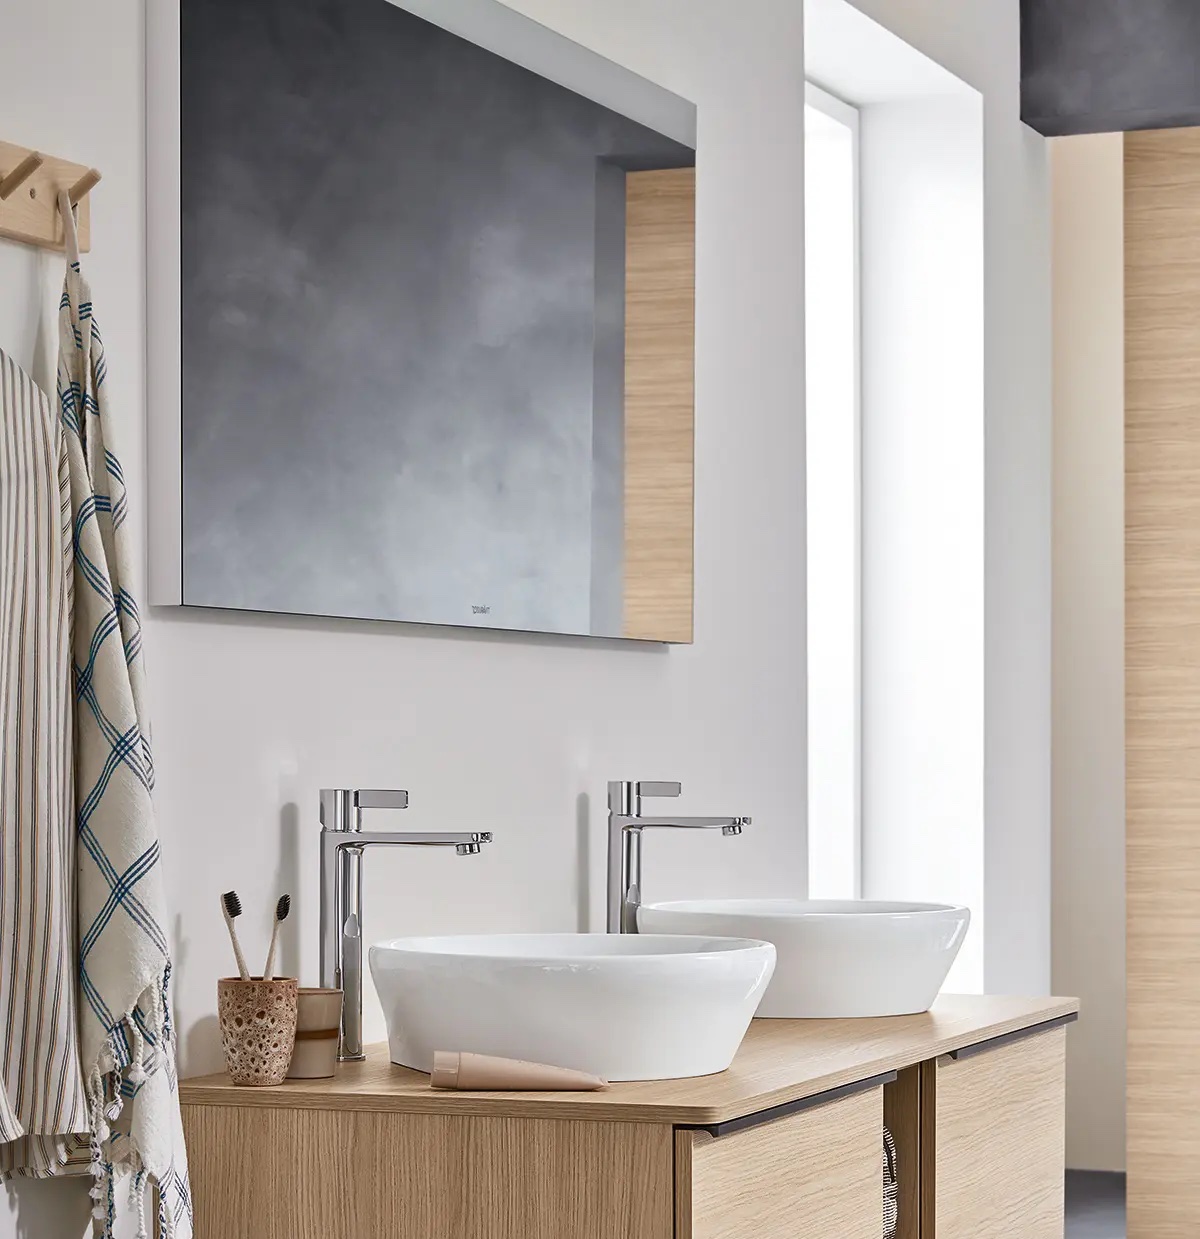 Kranen en wastafels voor een stijlvolle badkamer #badkamer #badkameridee #badkamerinspiratie #duravit #dneo #kranen #badkamerkraan